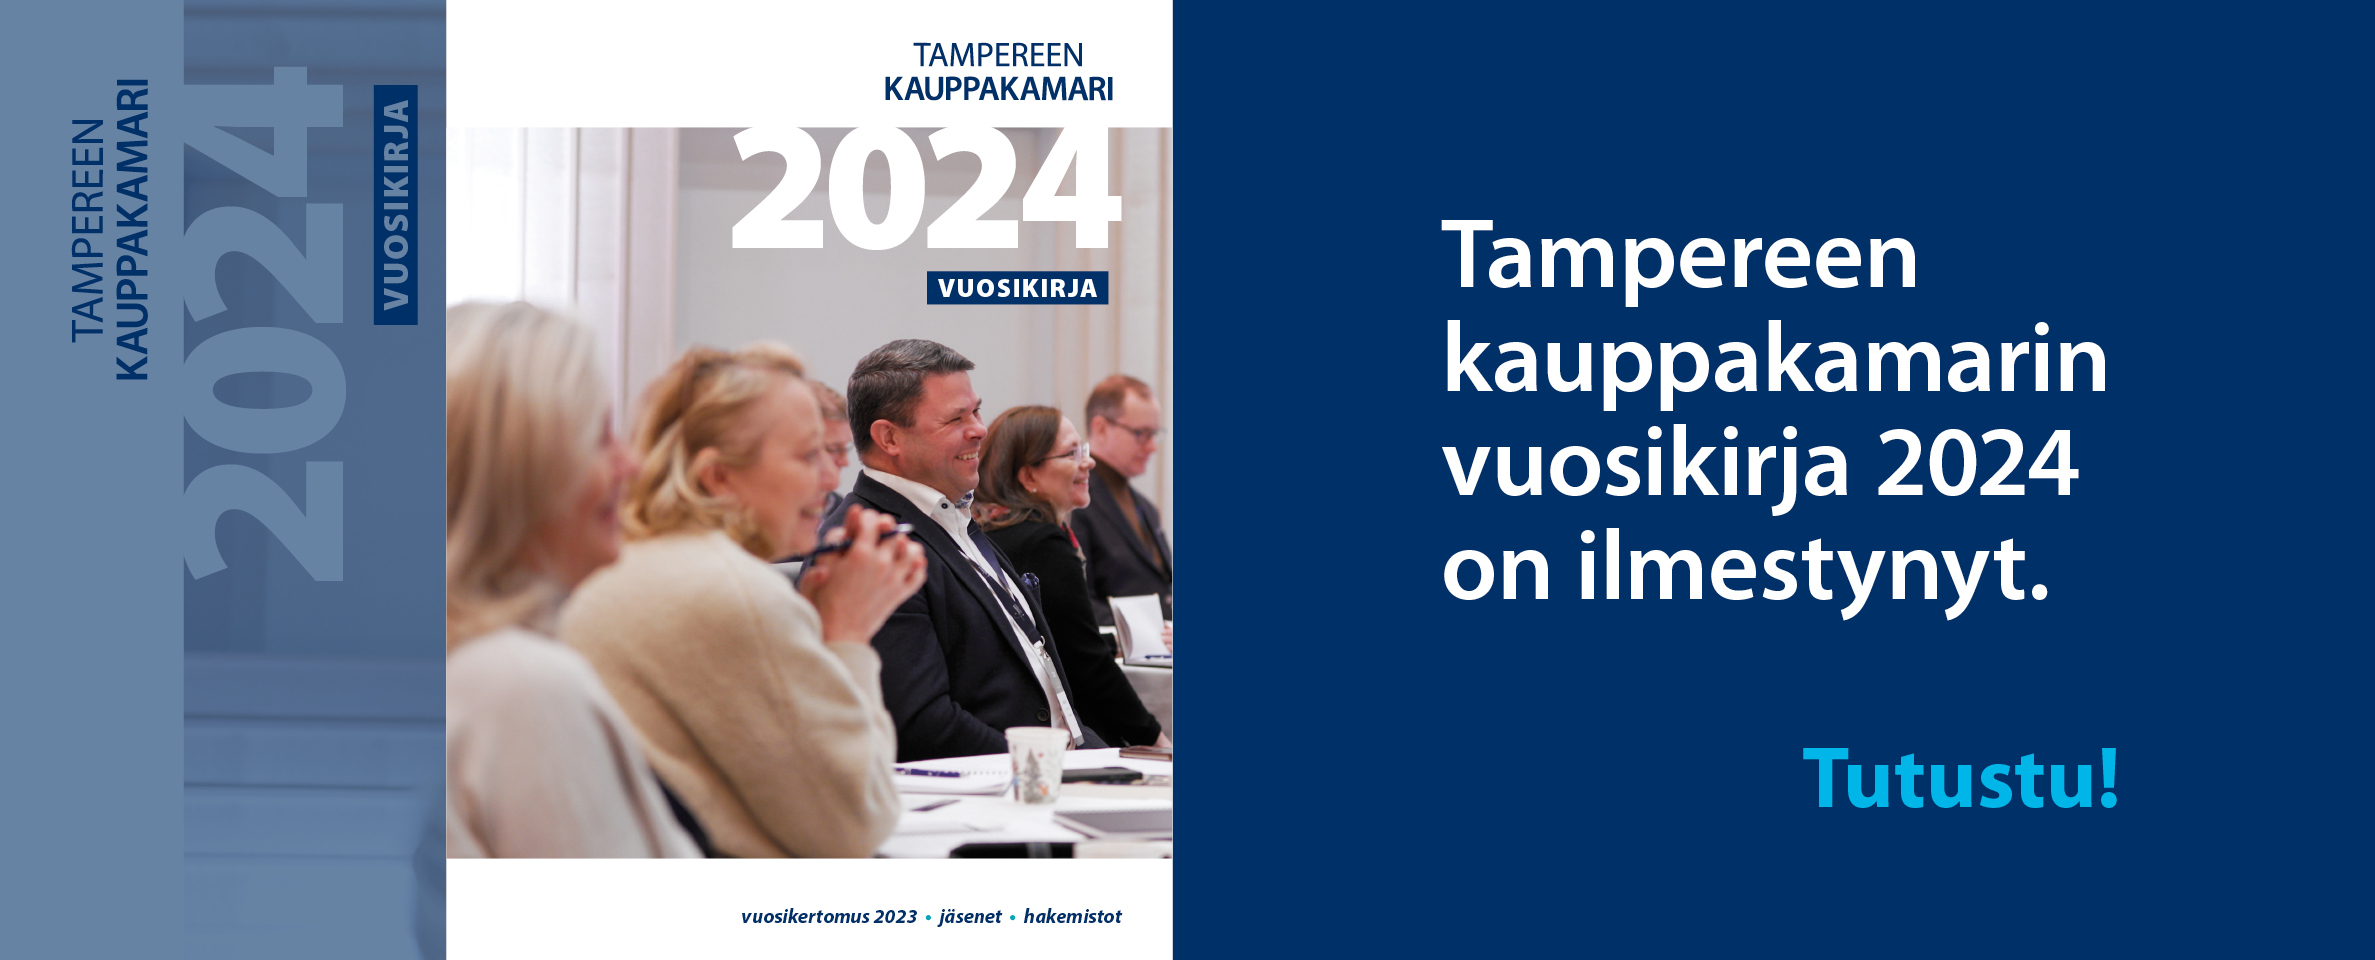 Vuosikirja, vuosikertomus, Tampereen kauppakamari